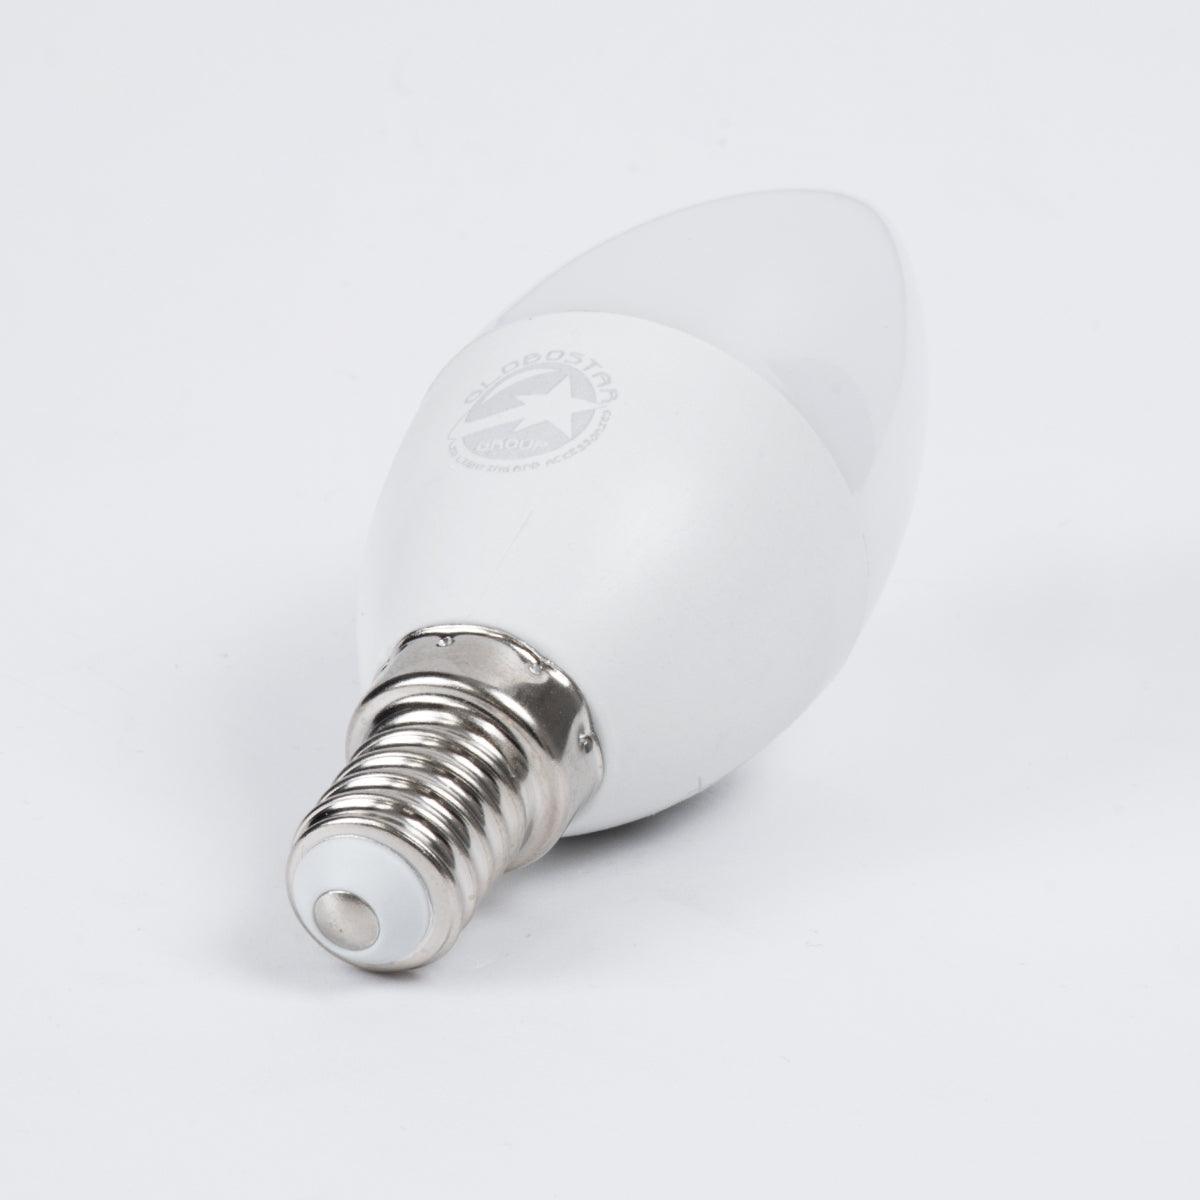 60011 Λάμπα LED E14 C37 Κεράκι 8W 880lm 260° AC 220-240V IP20 Φ3.7 x Υ10cm Θερμό Λευκό 2700K